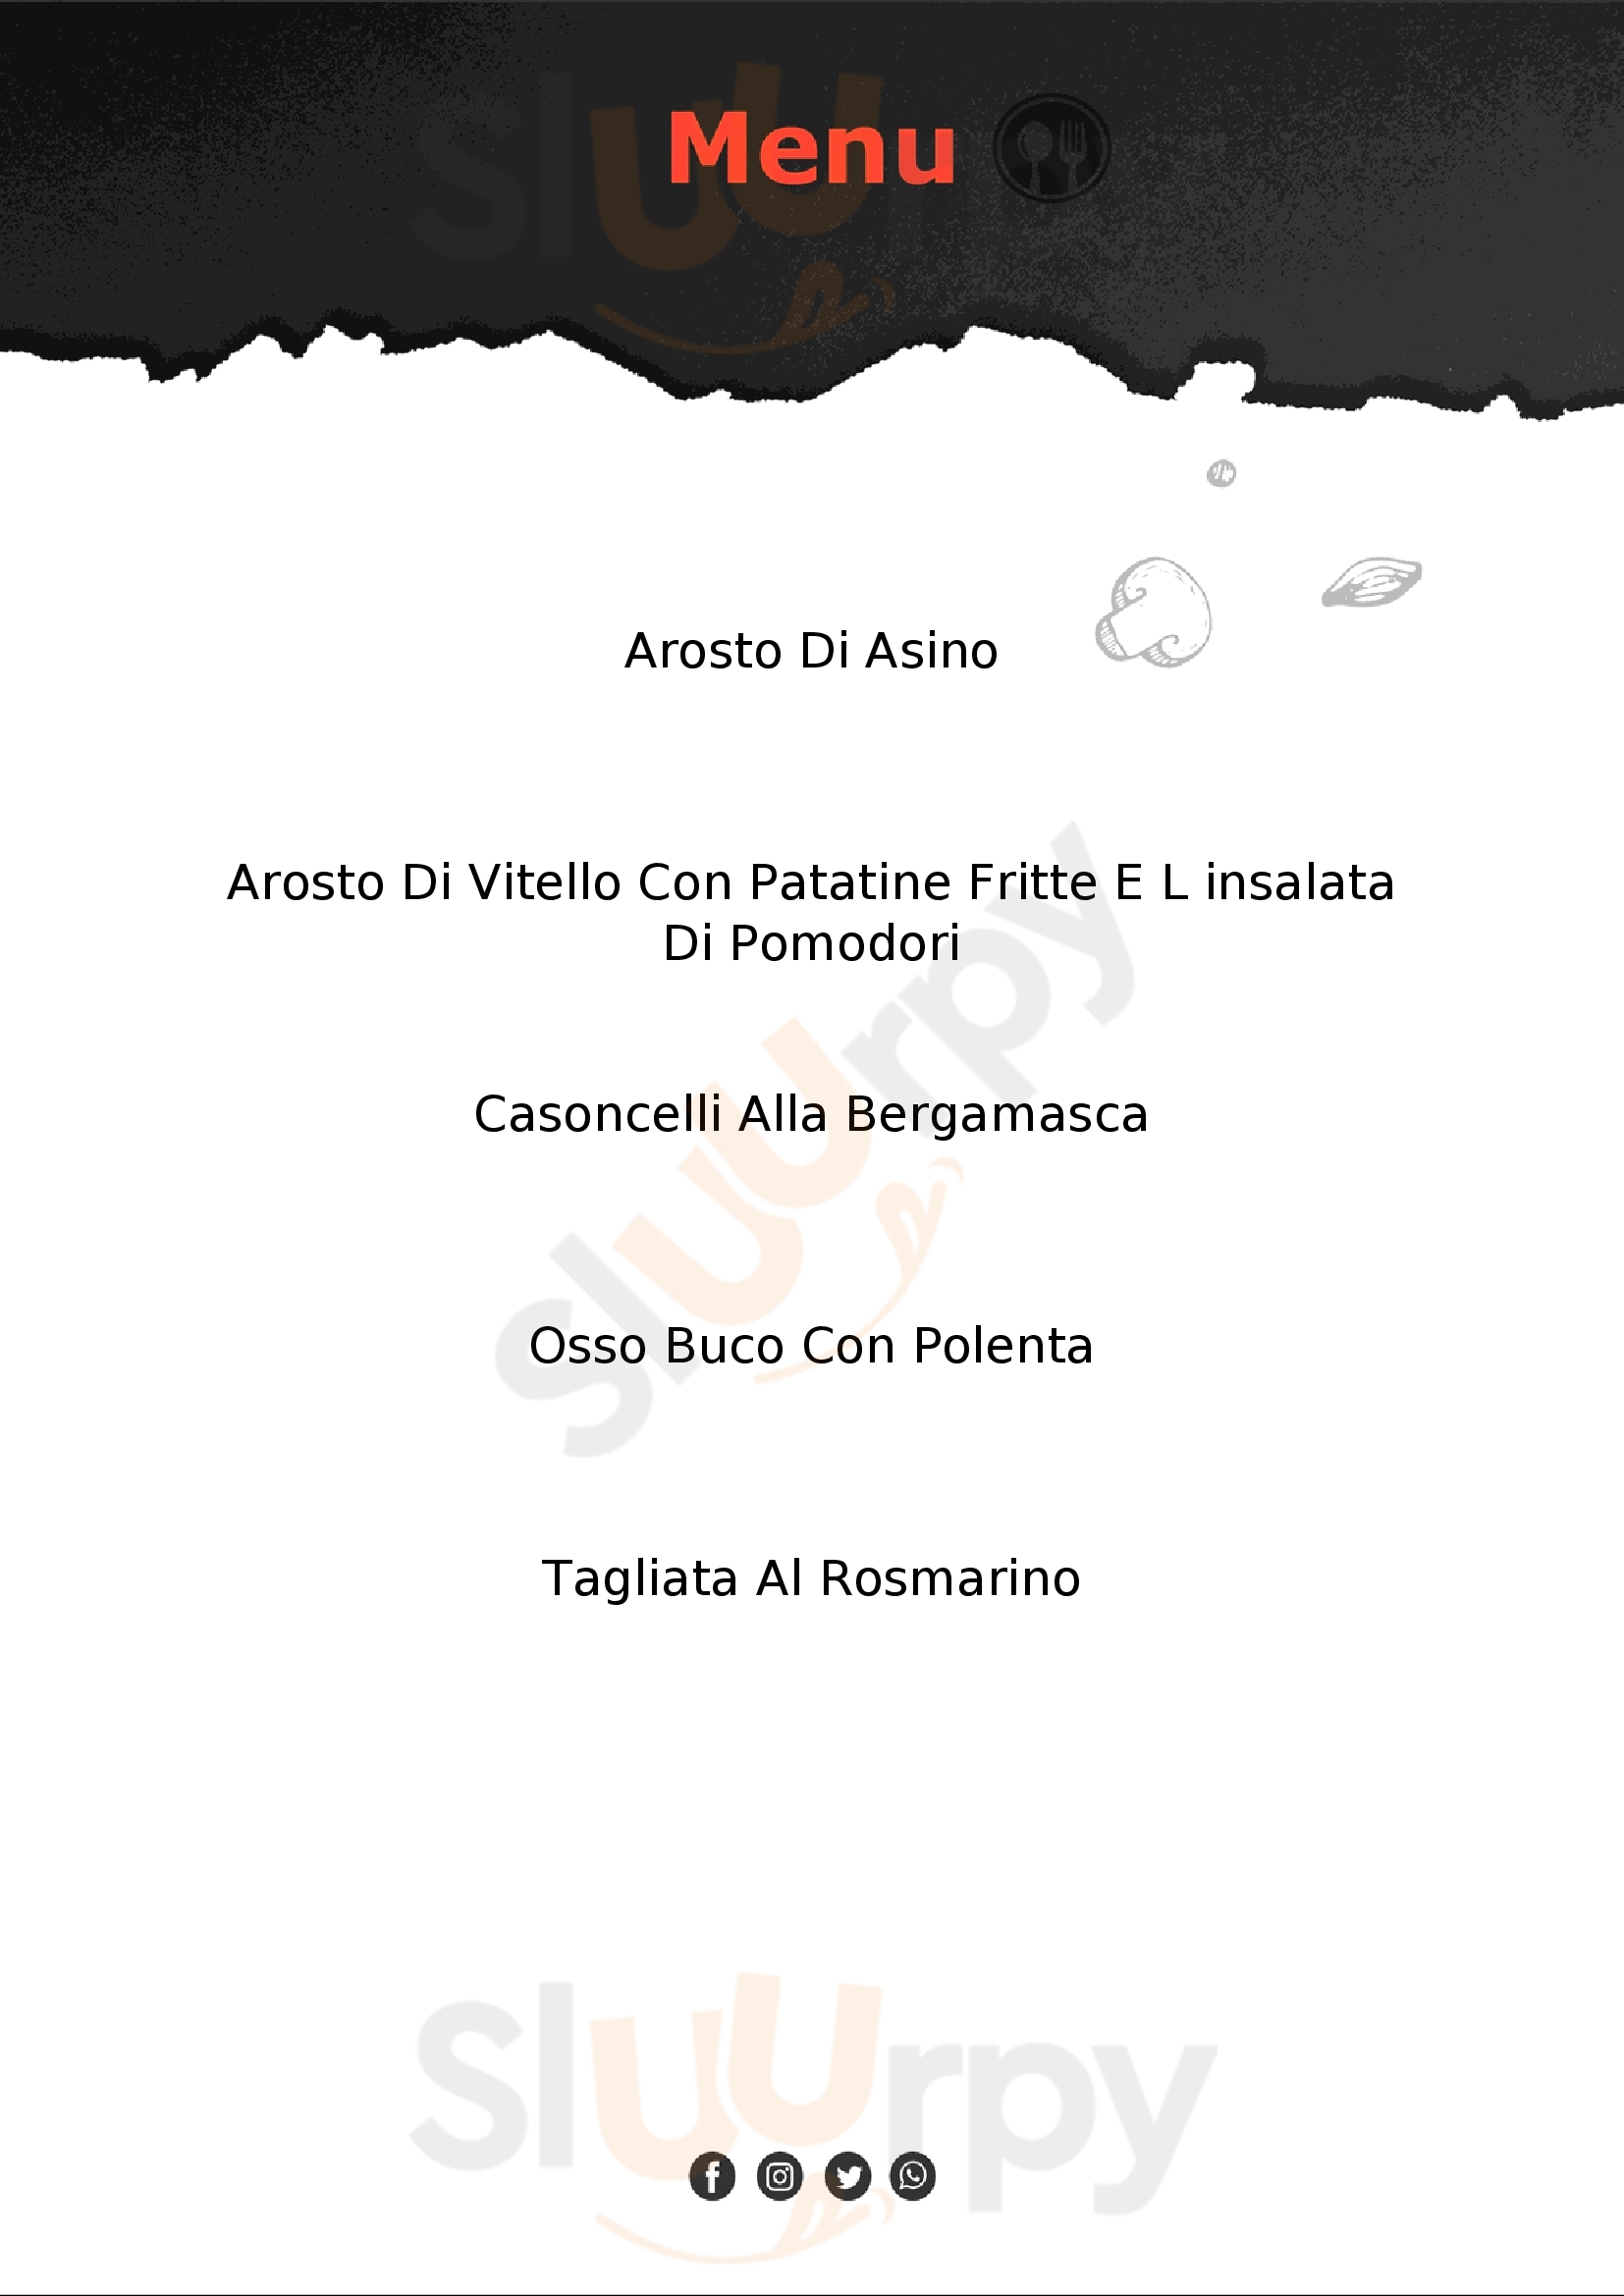 Ristorante Albergo da Elia Sant'Omobono Terme menù 1 pagina